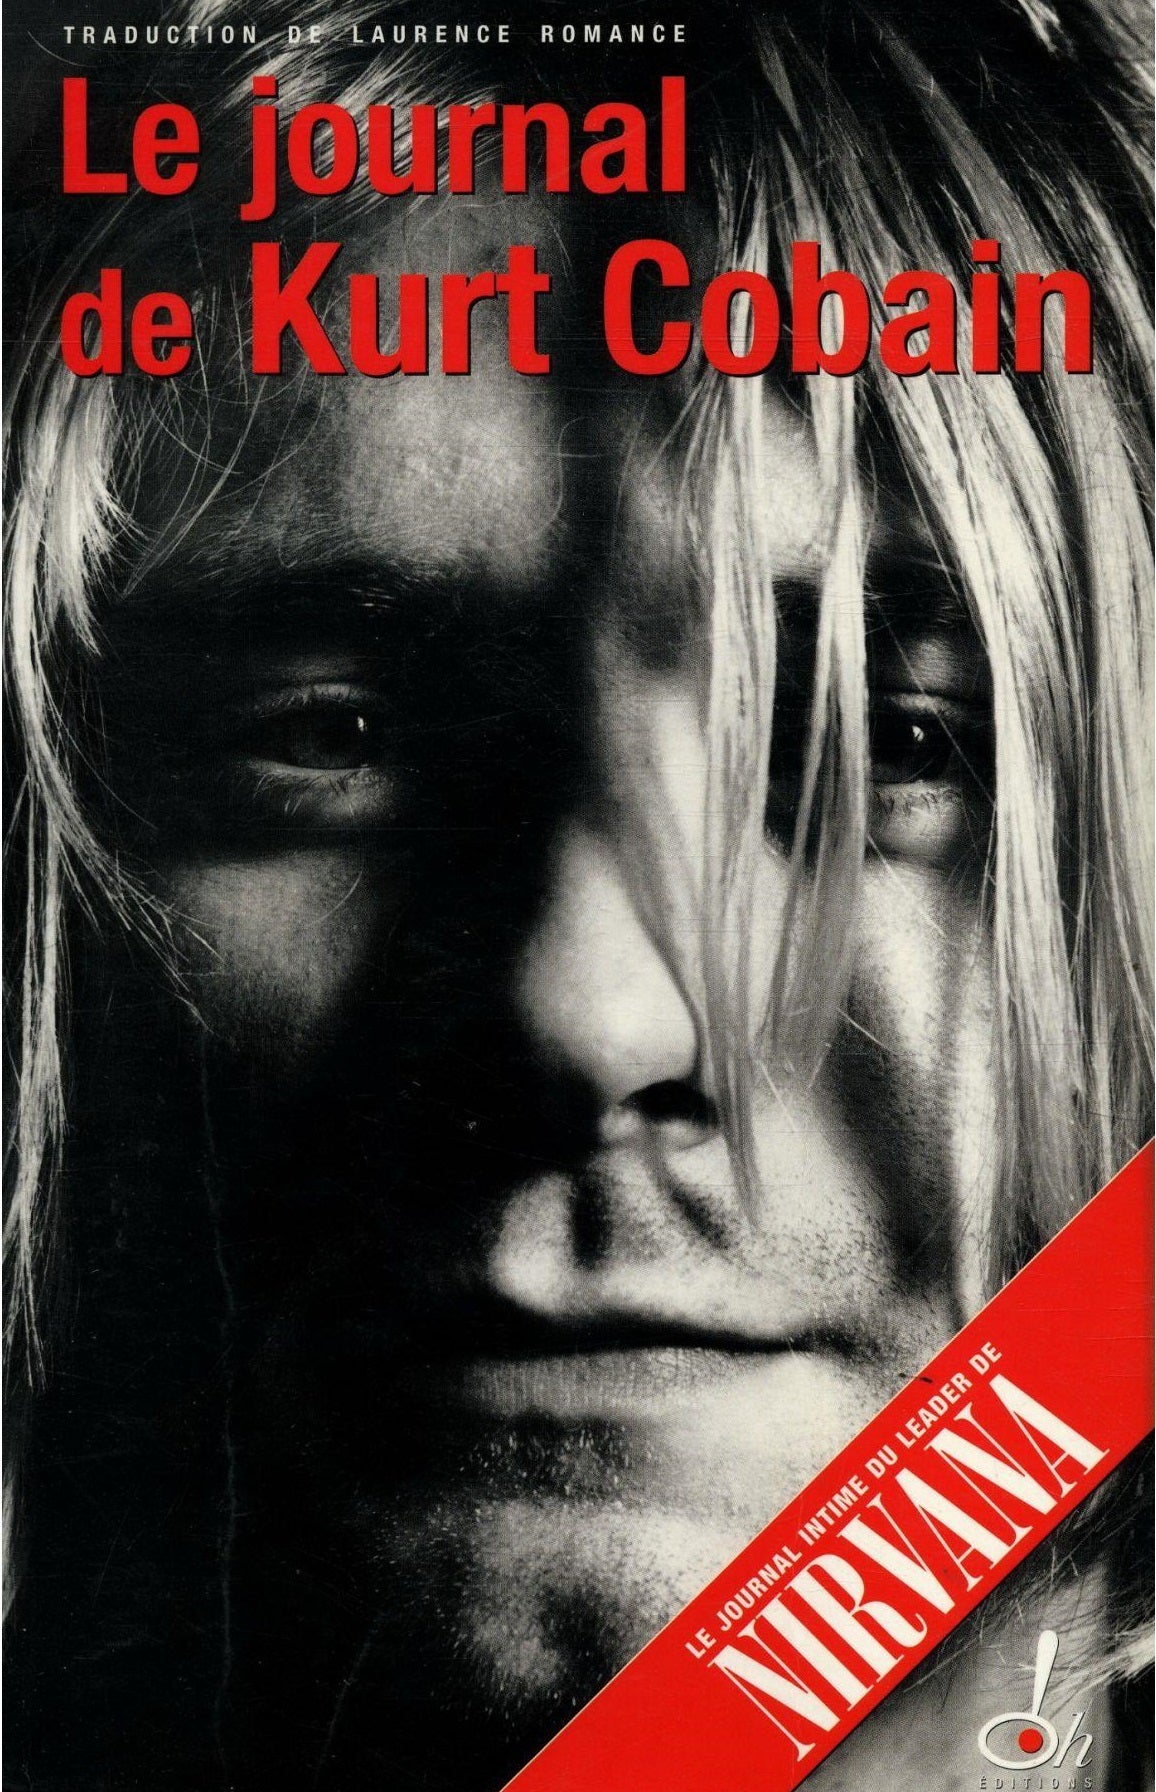 Le Journal de Kurt Cobain